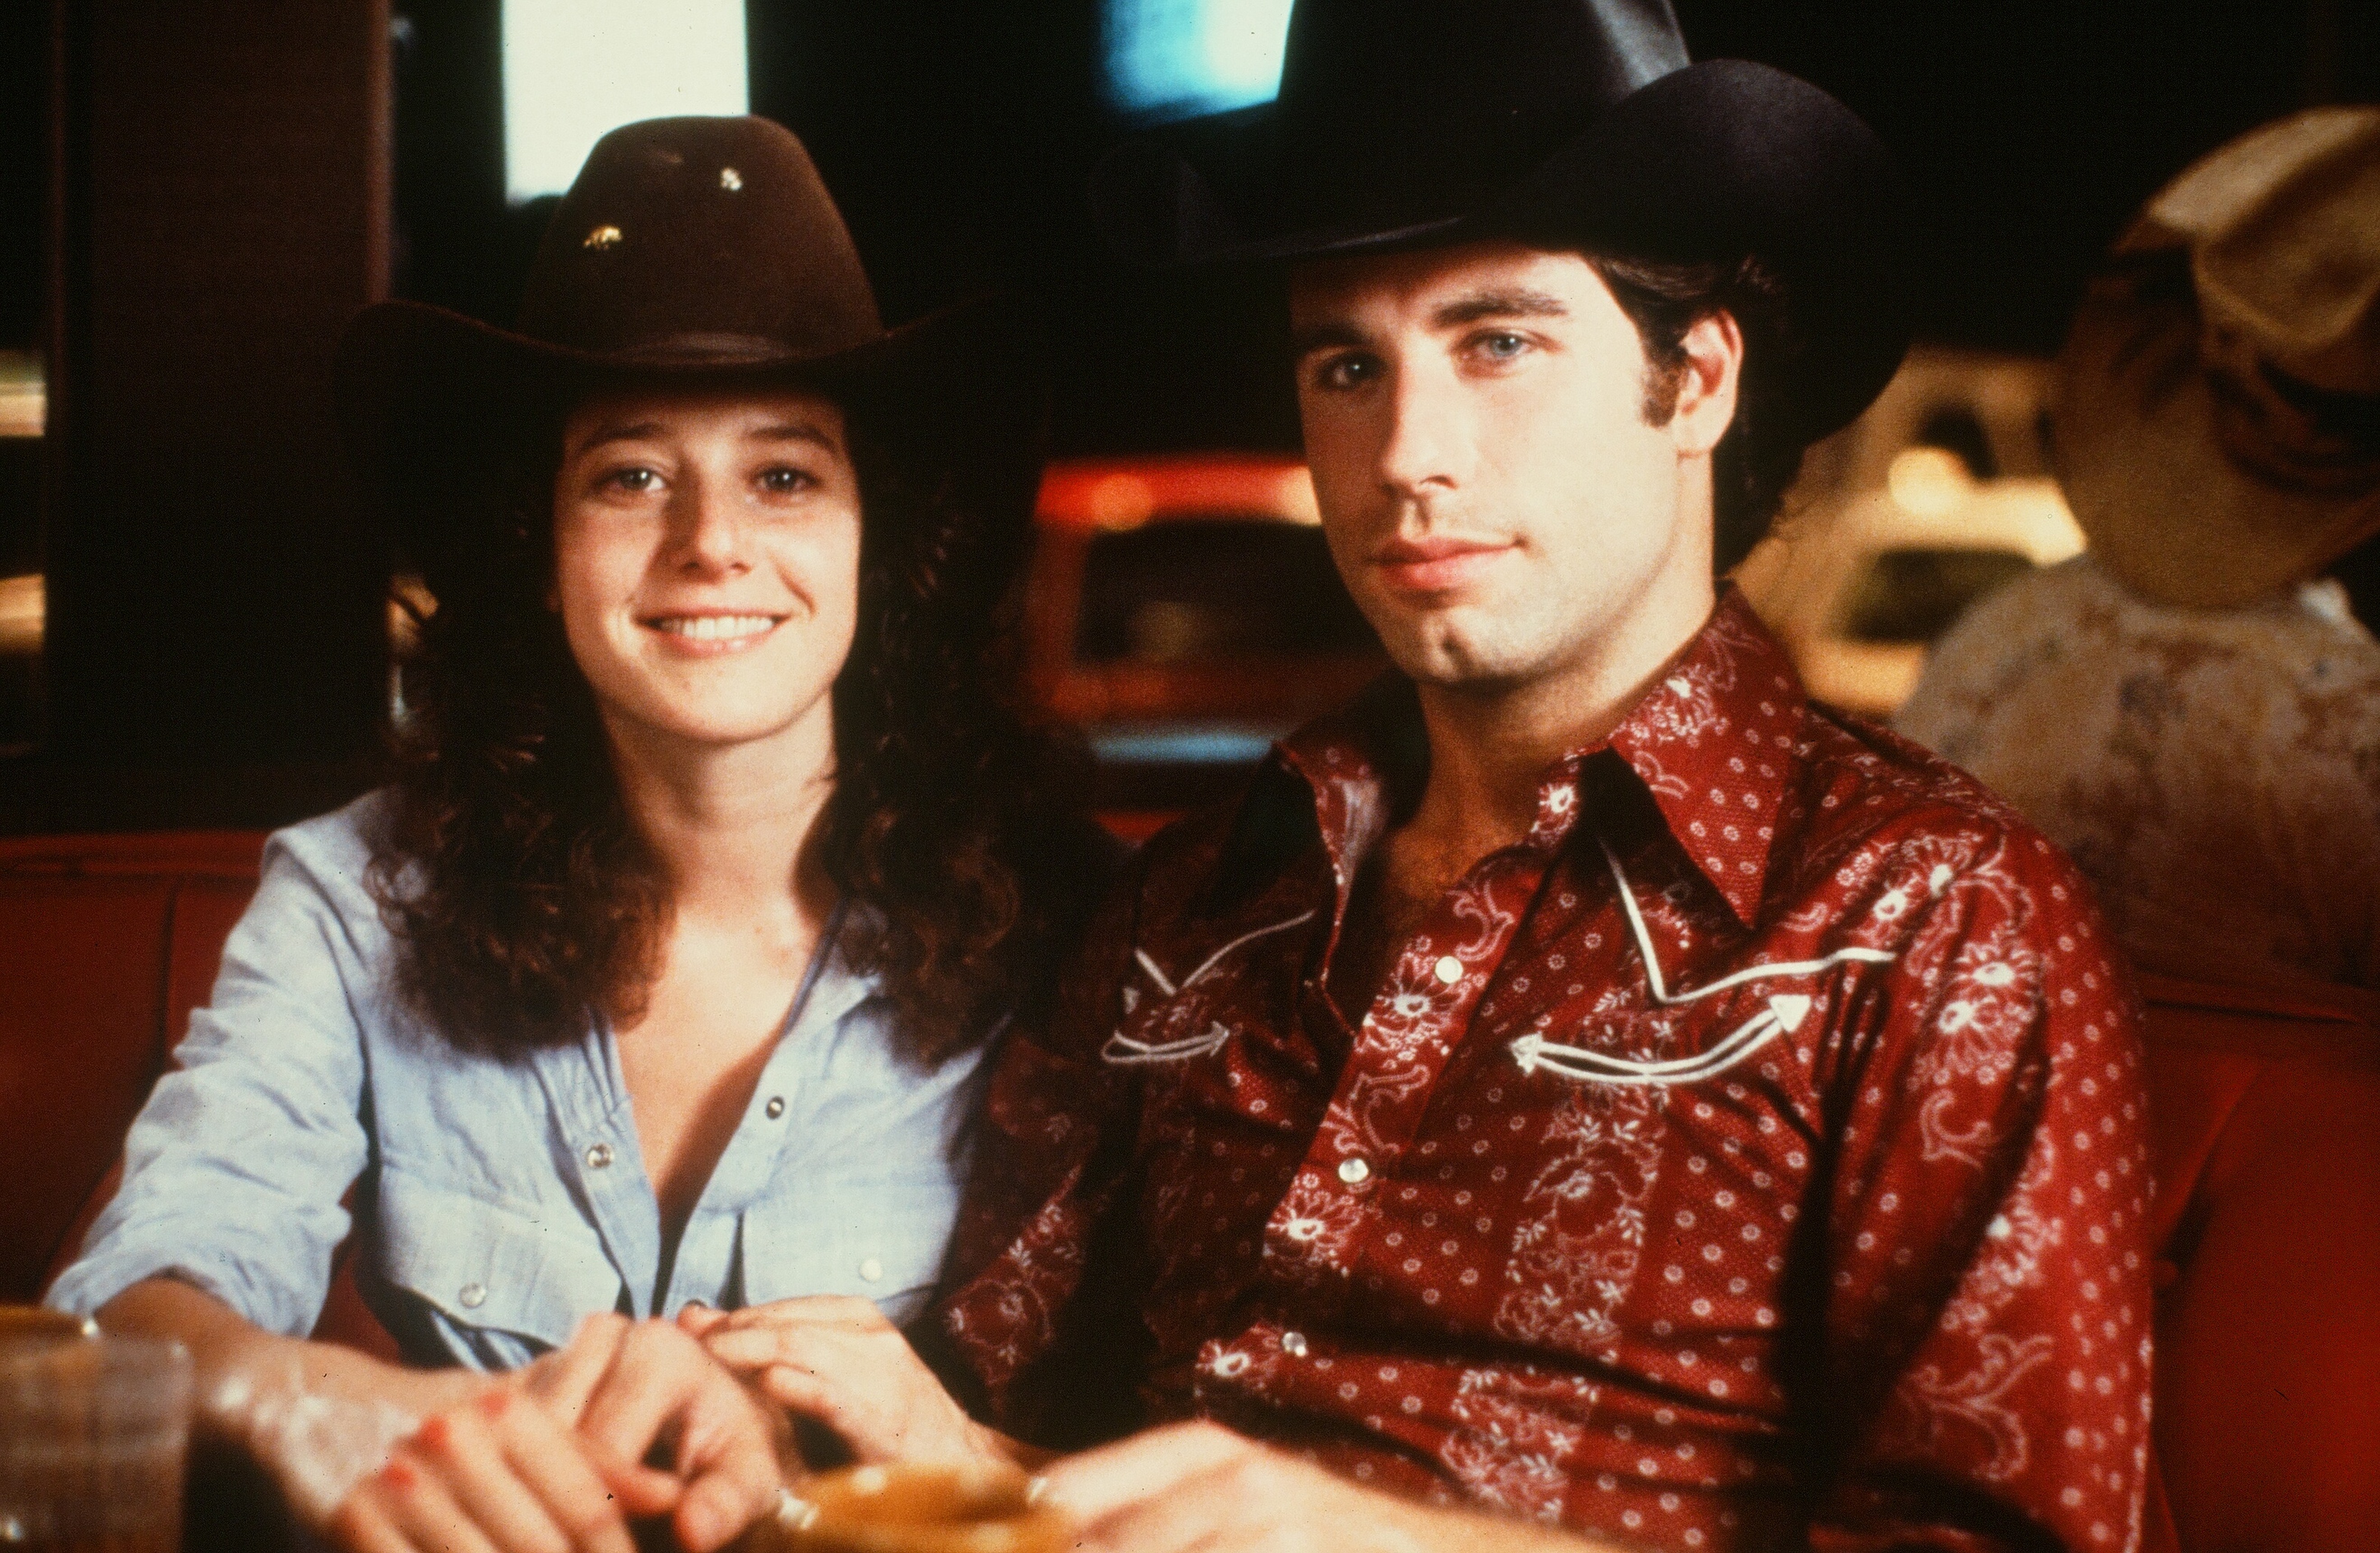 Debra Winger et John Travolta sur le plateau de tournage de "Urban Cowboy", en 1980. | Source : Getty Images